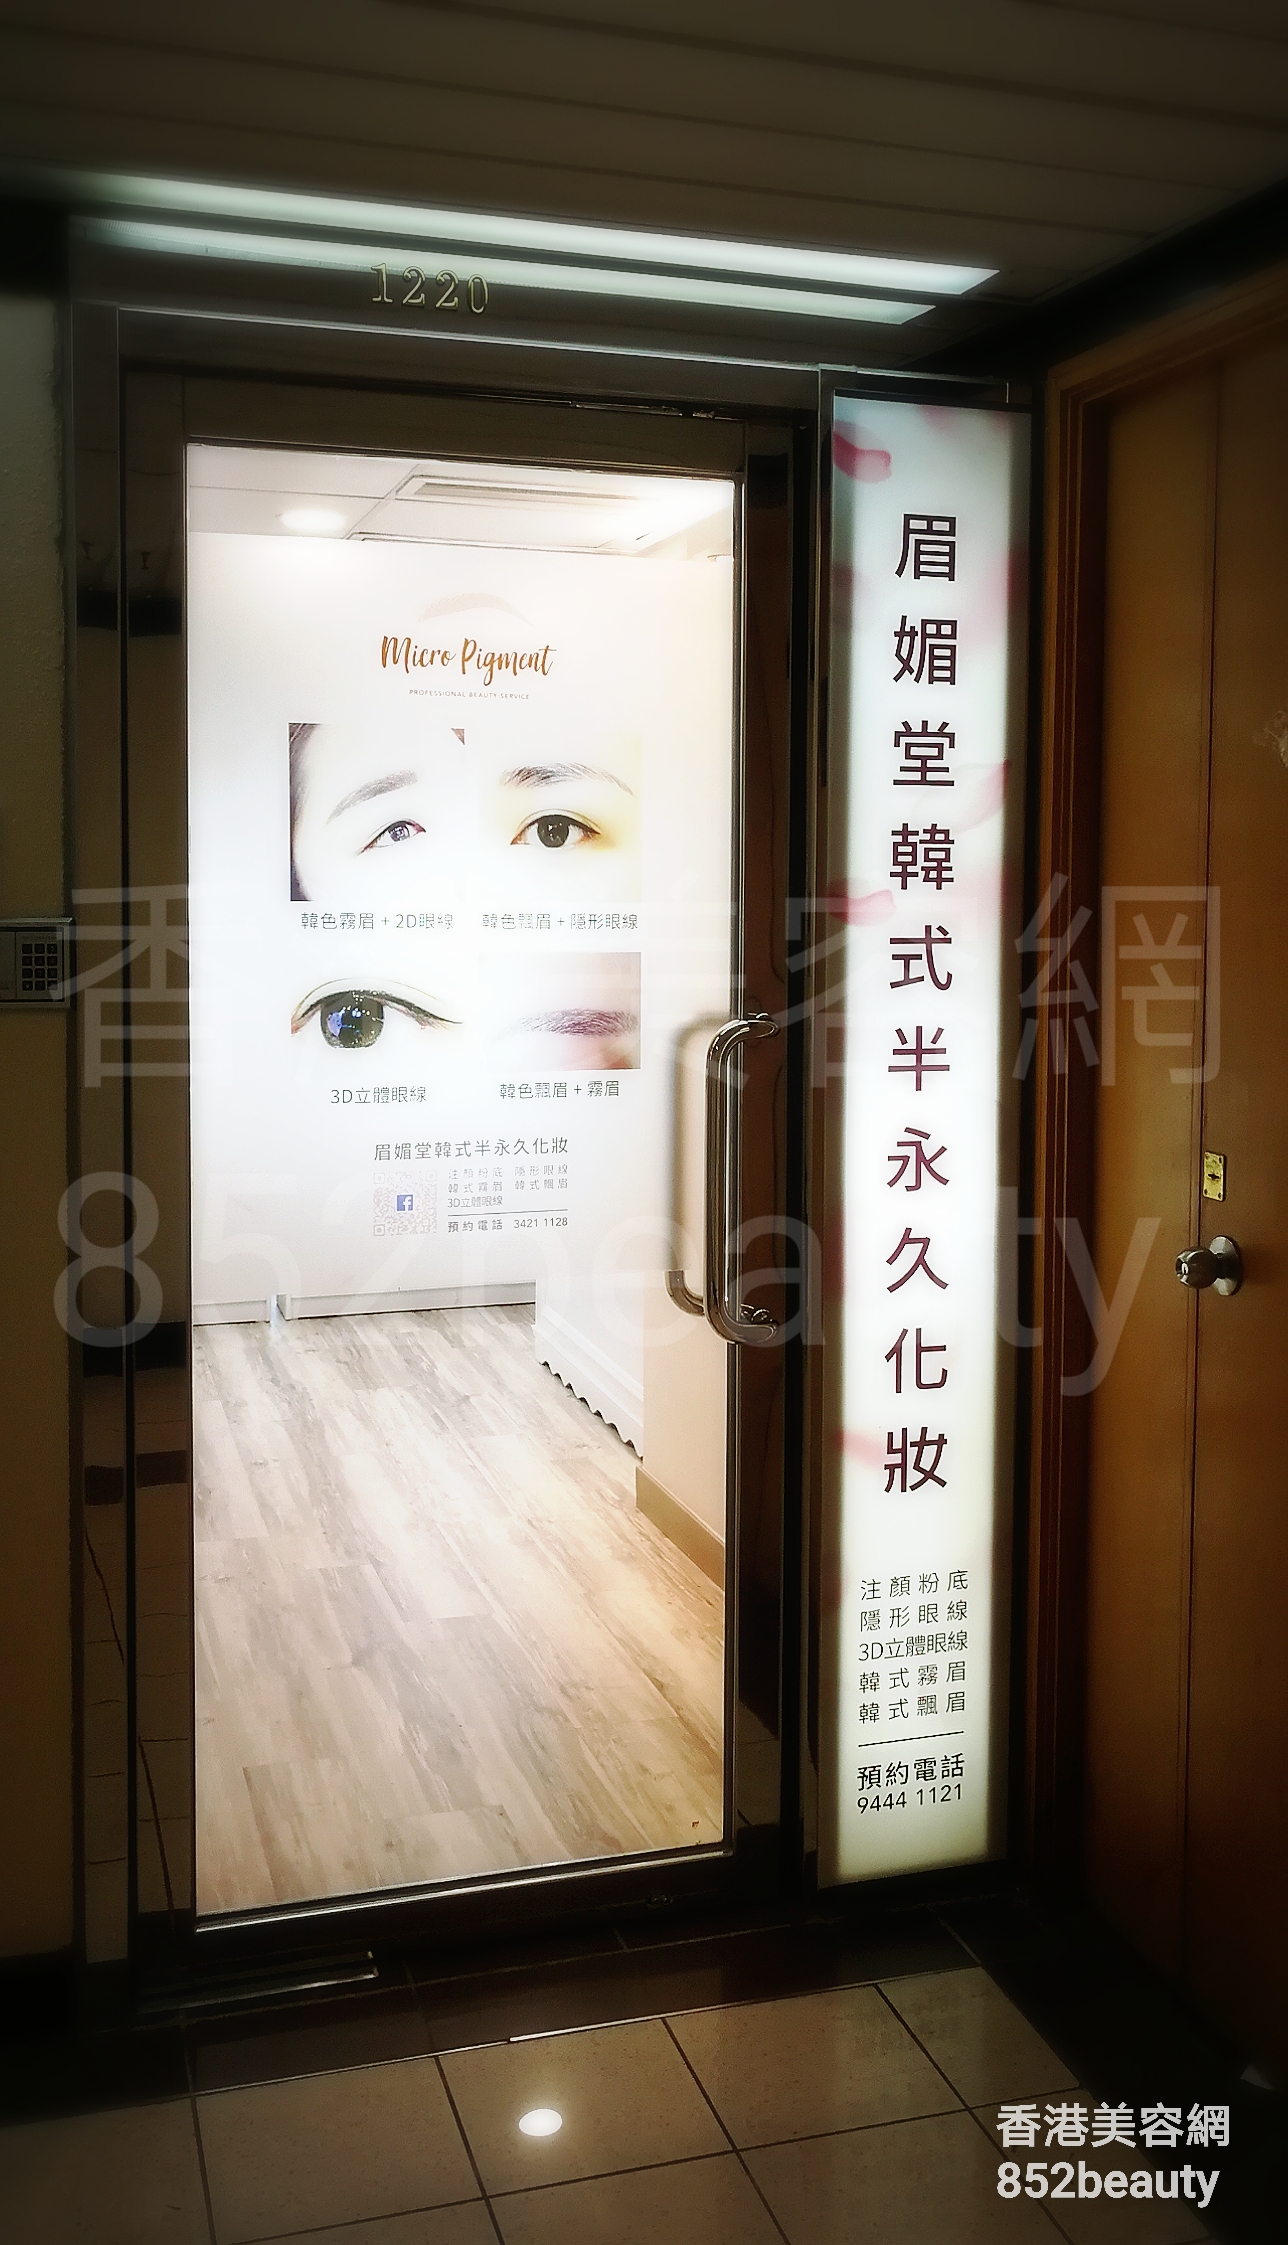 香港美容網 Hong Kong Beauty Salon 美容院 / 美容師: Micro Pigment 眉媚堂